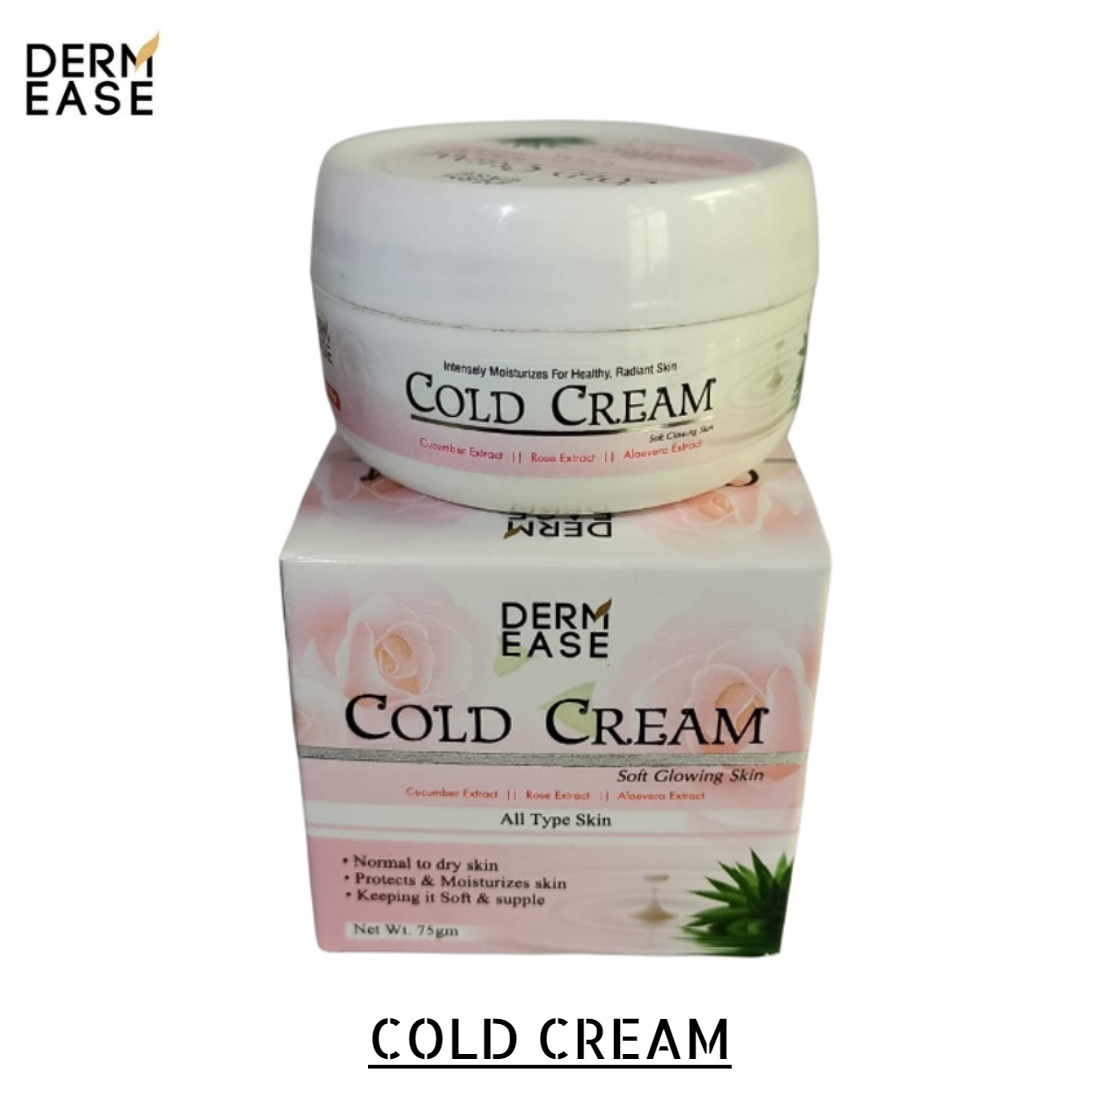 DERM EASE Cold Cream